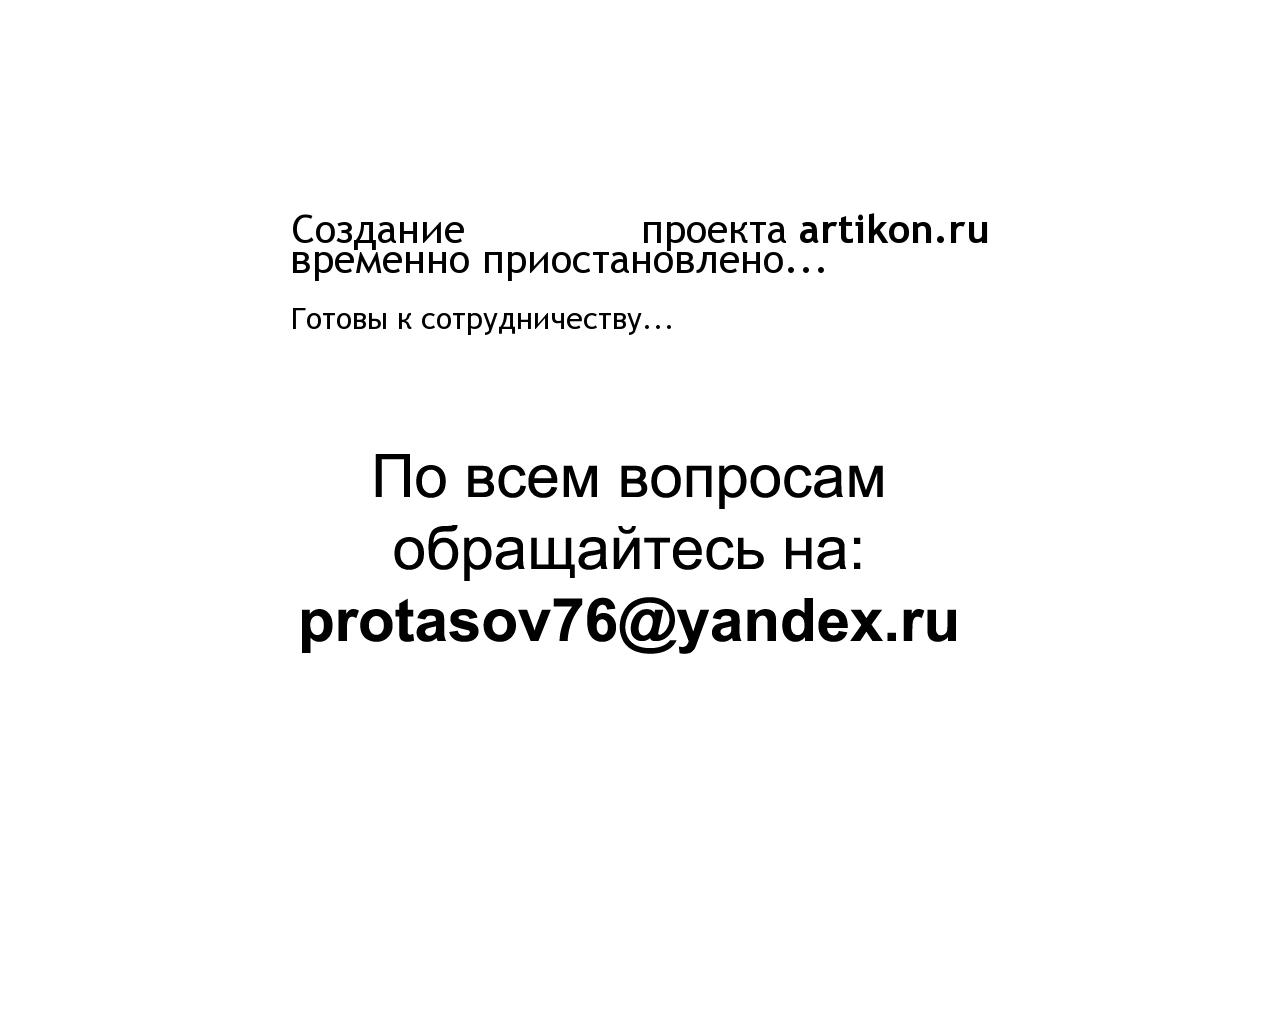 Изображение сайта artikon.ru в разрешении 1280x1024